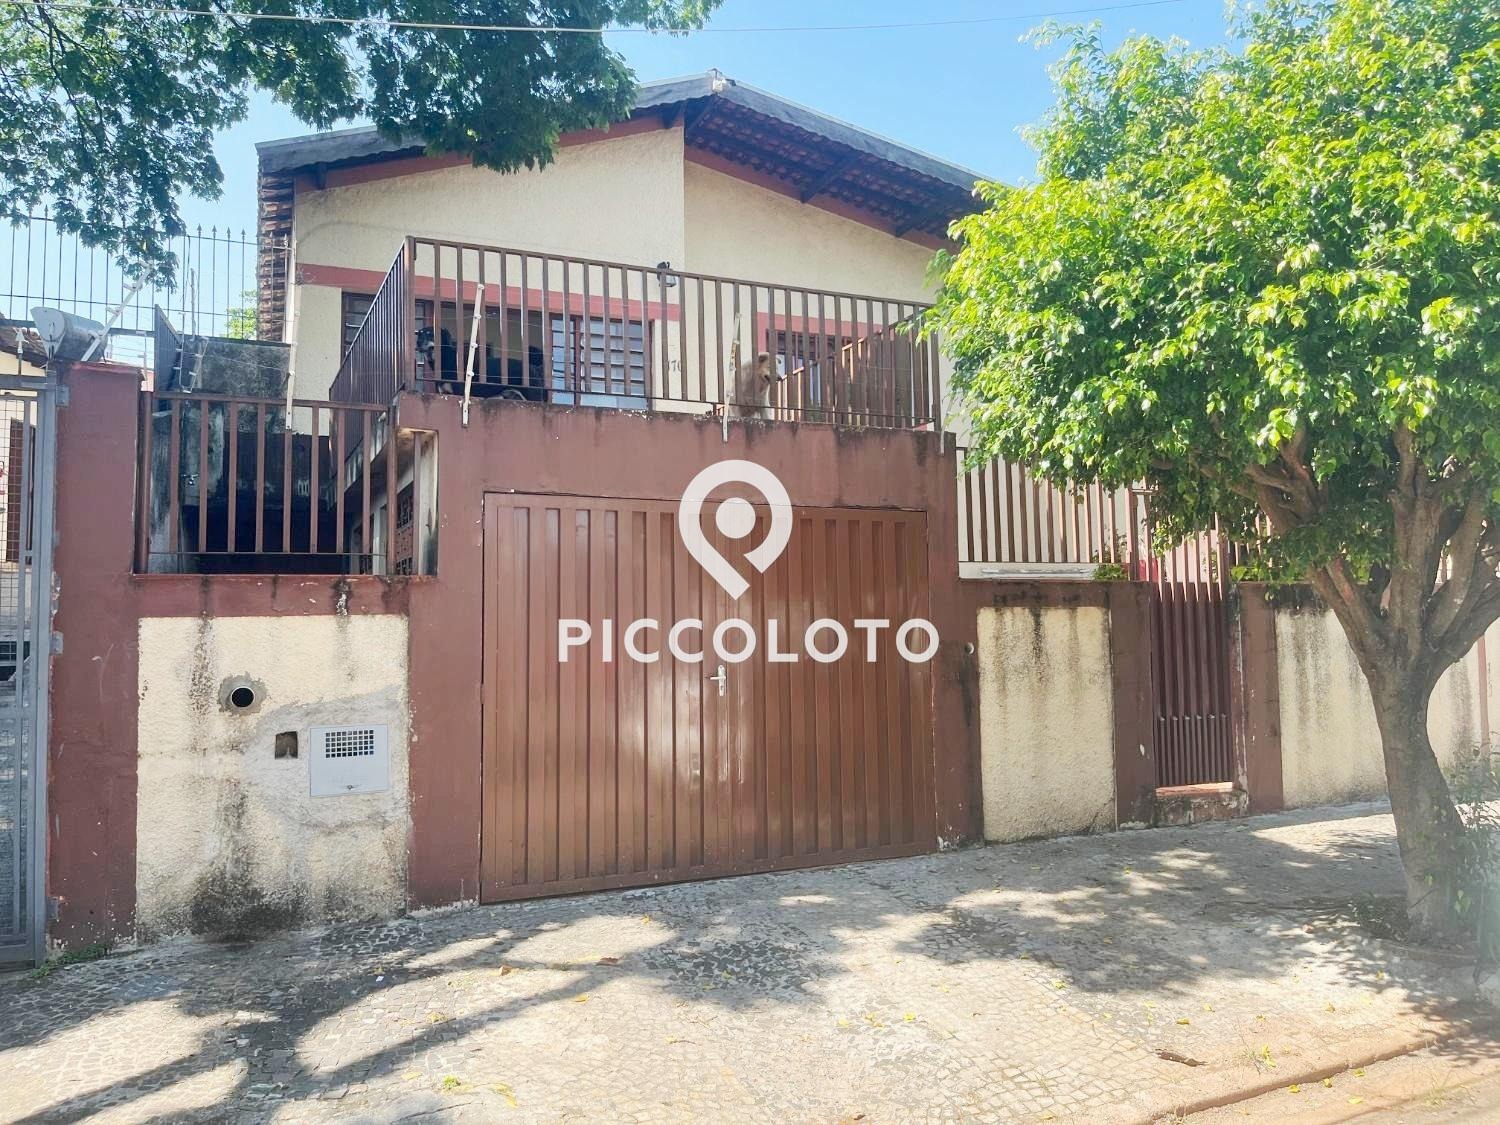 Piccoloto - Casa à venda no Chácara da Barra em Campinas